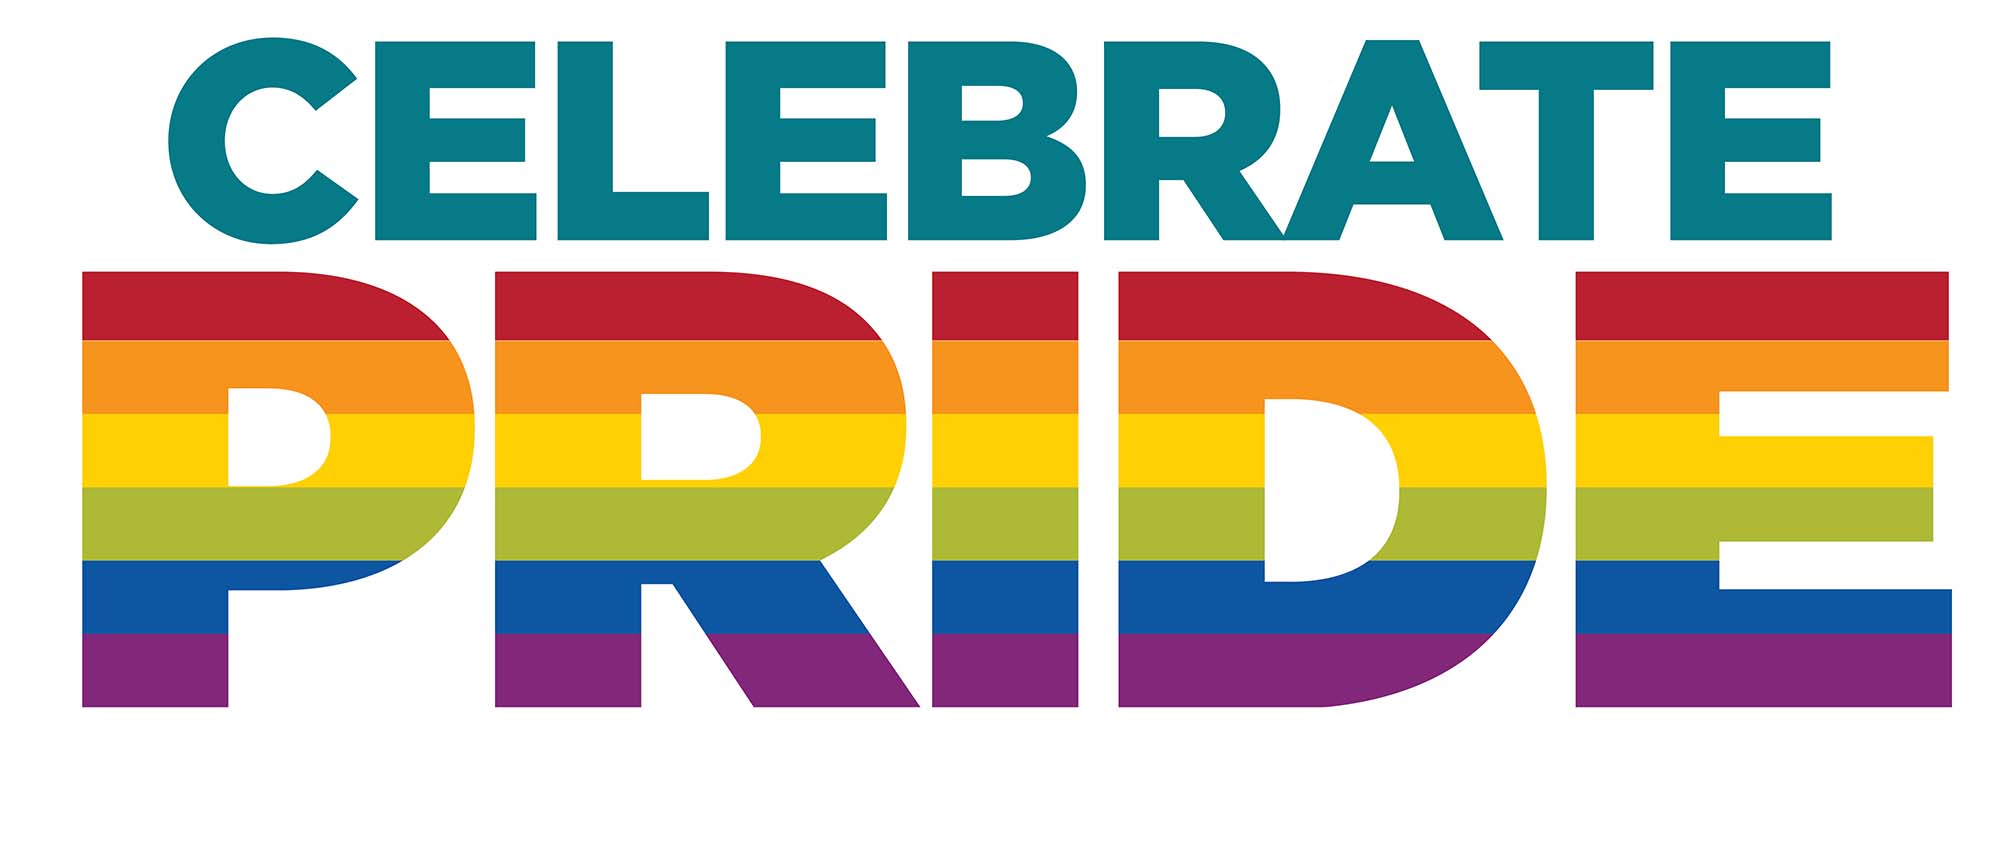 Gráfico de la UNM que dice "Celebrate Pride" con el orgullo coloreado como un arcoíris